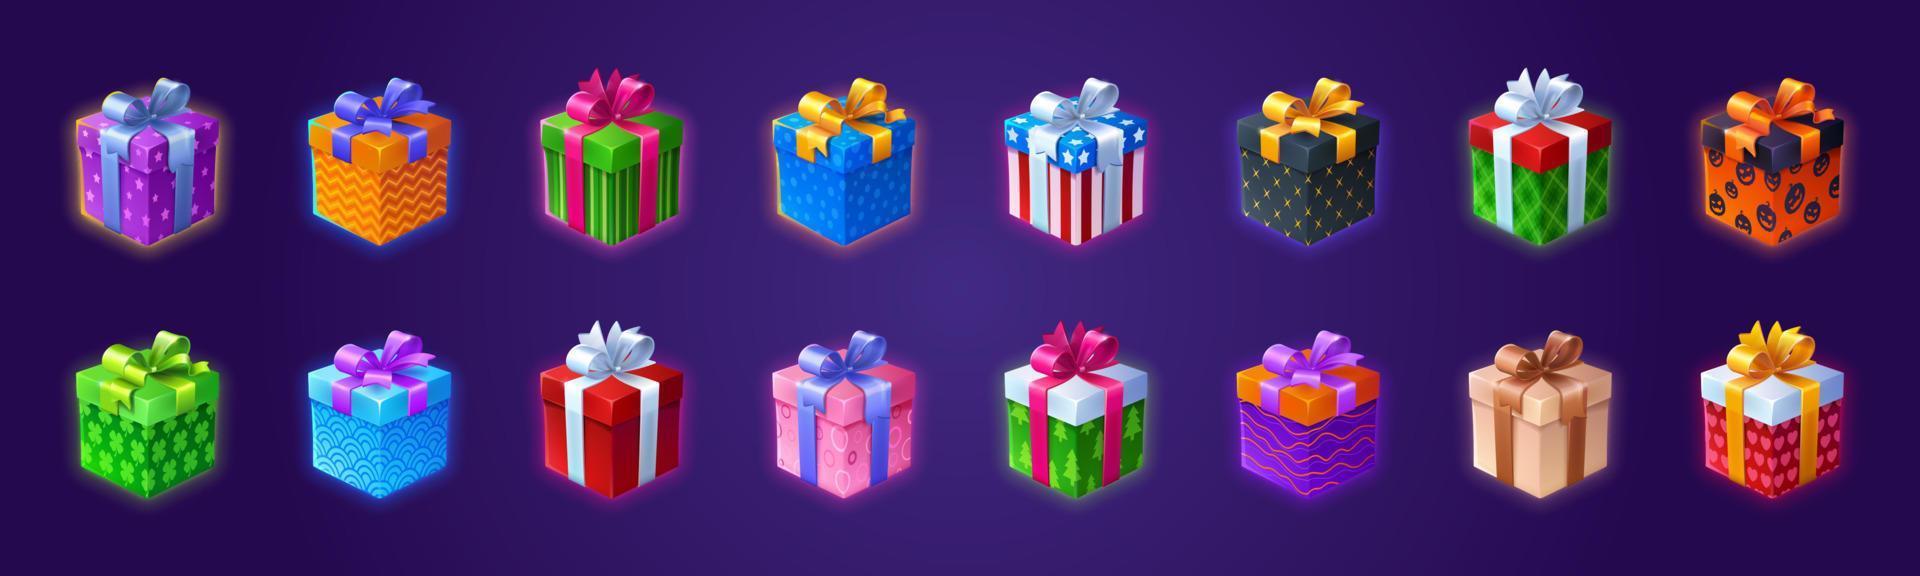 cajas de regalo regalos 3d en papel de regalo de colores vector